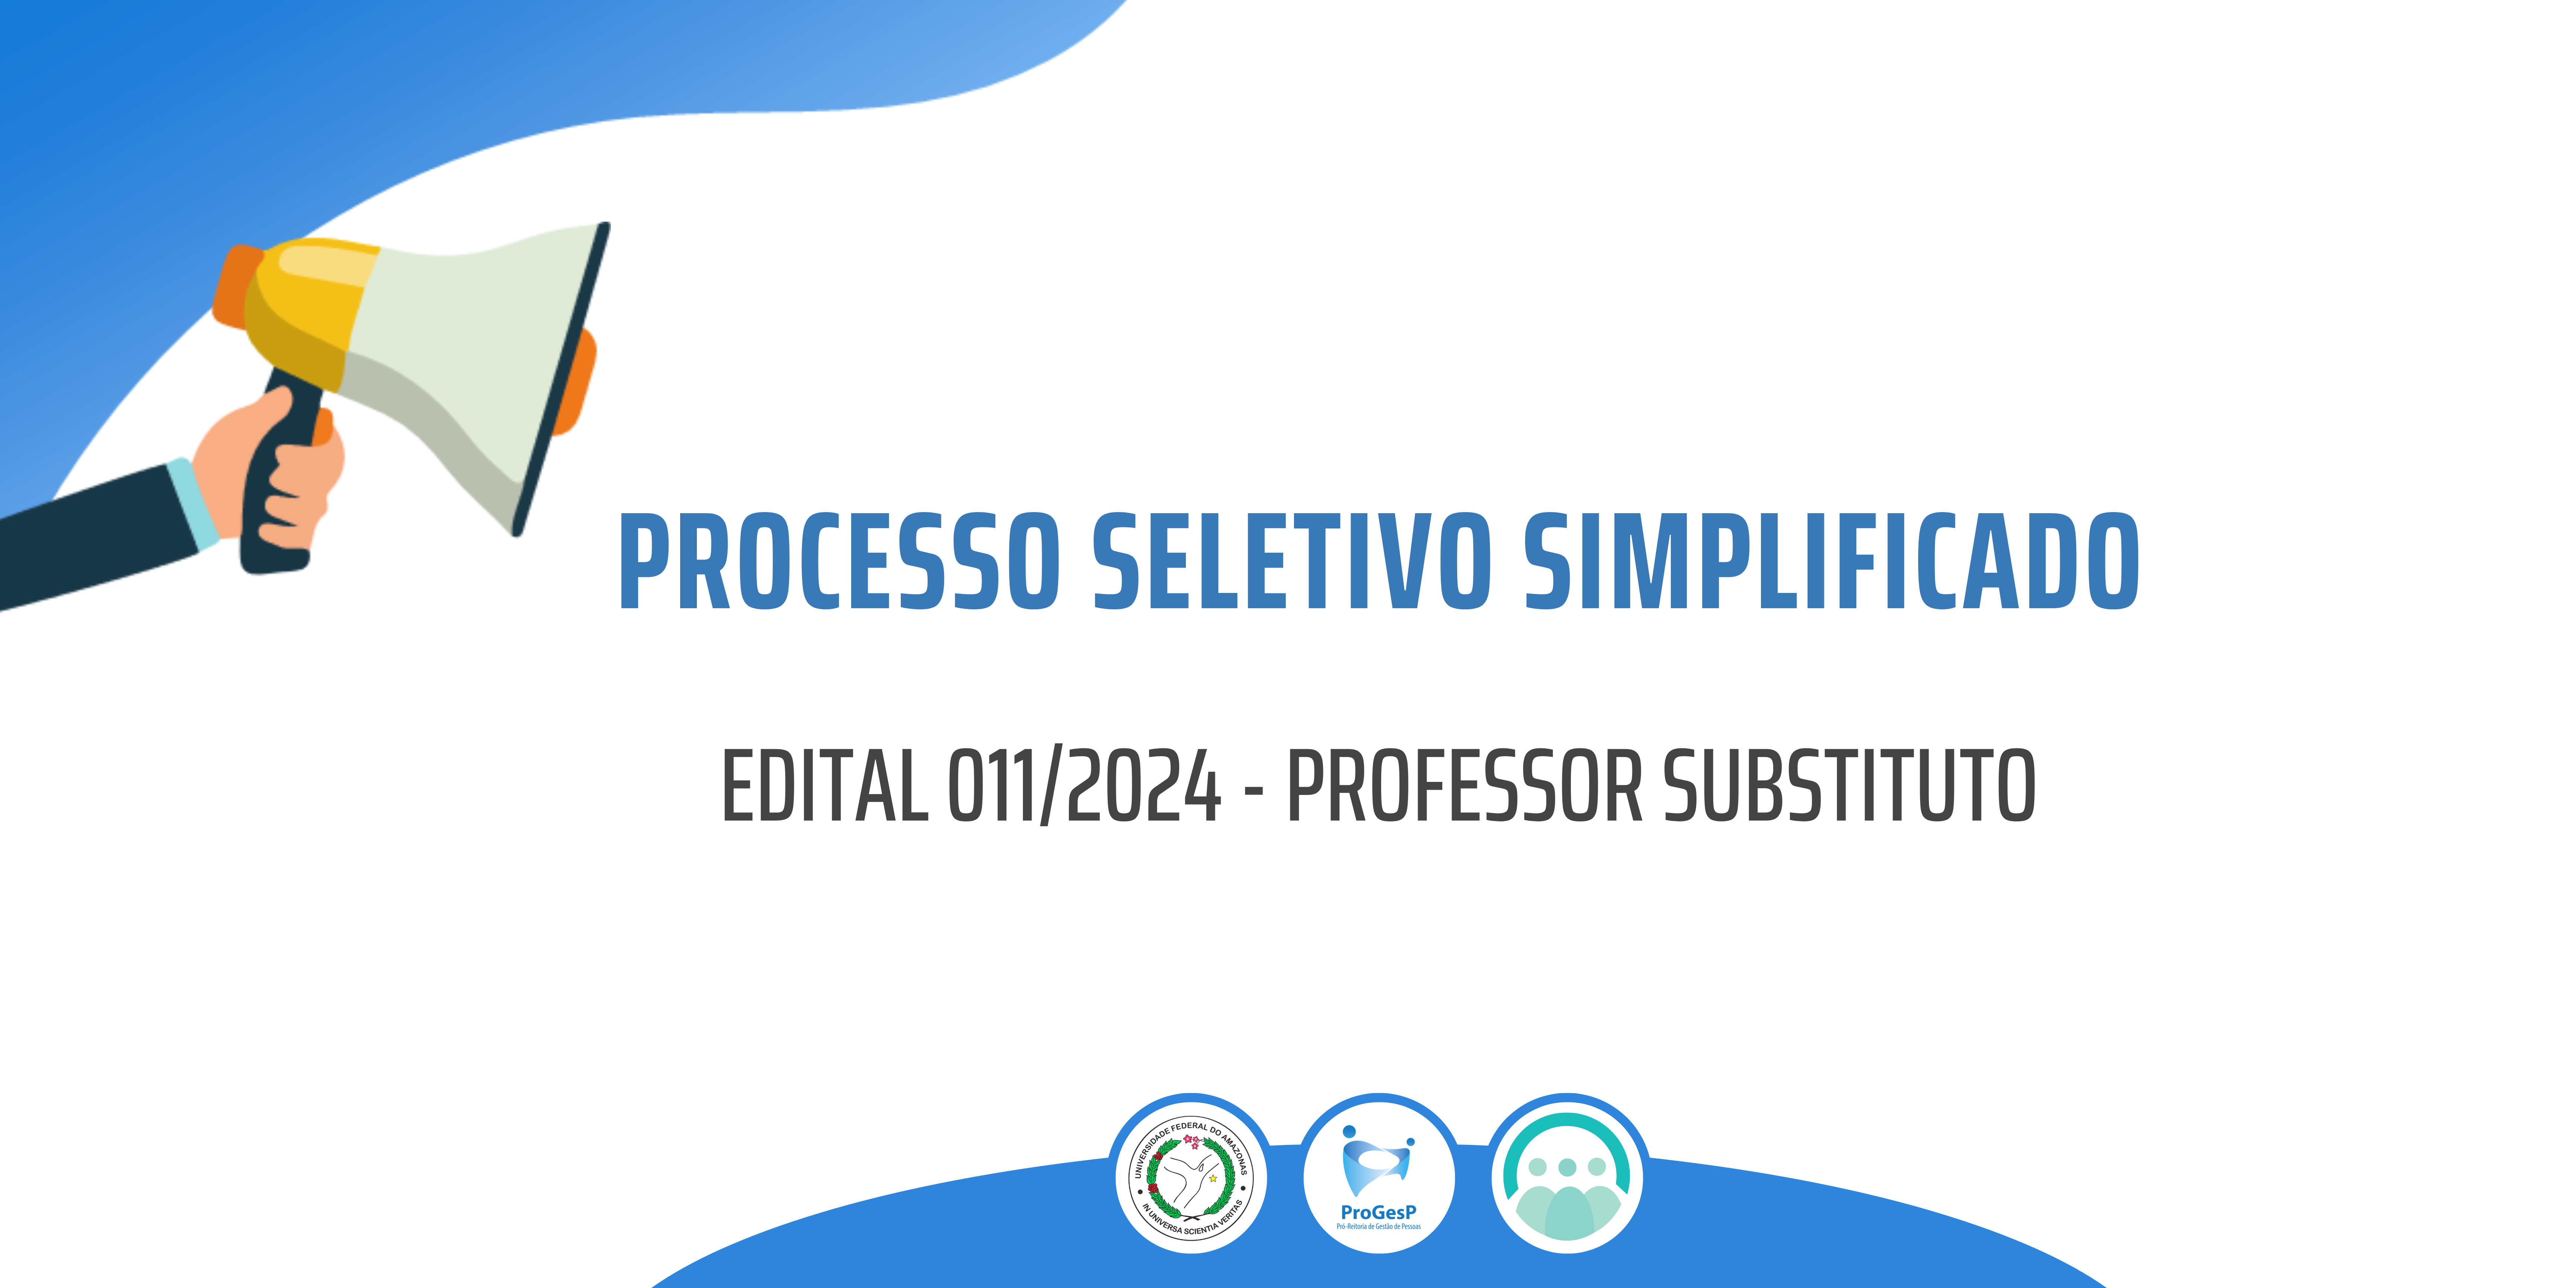 Lançamento do Edital nº 011/2024 de Processo Seletivo Simplificado